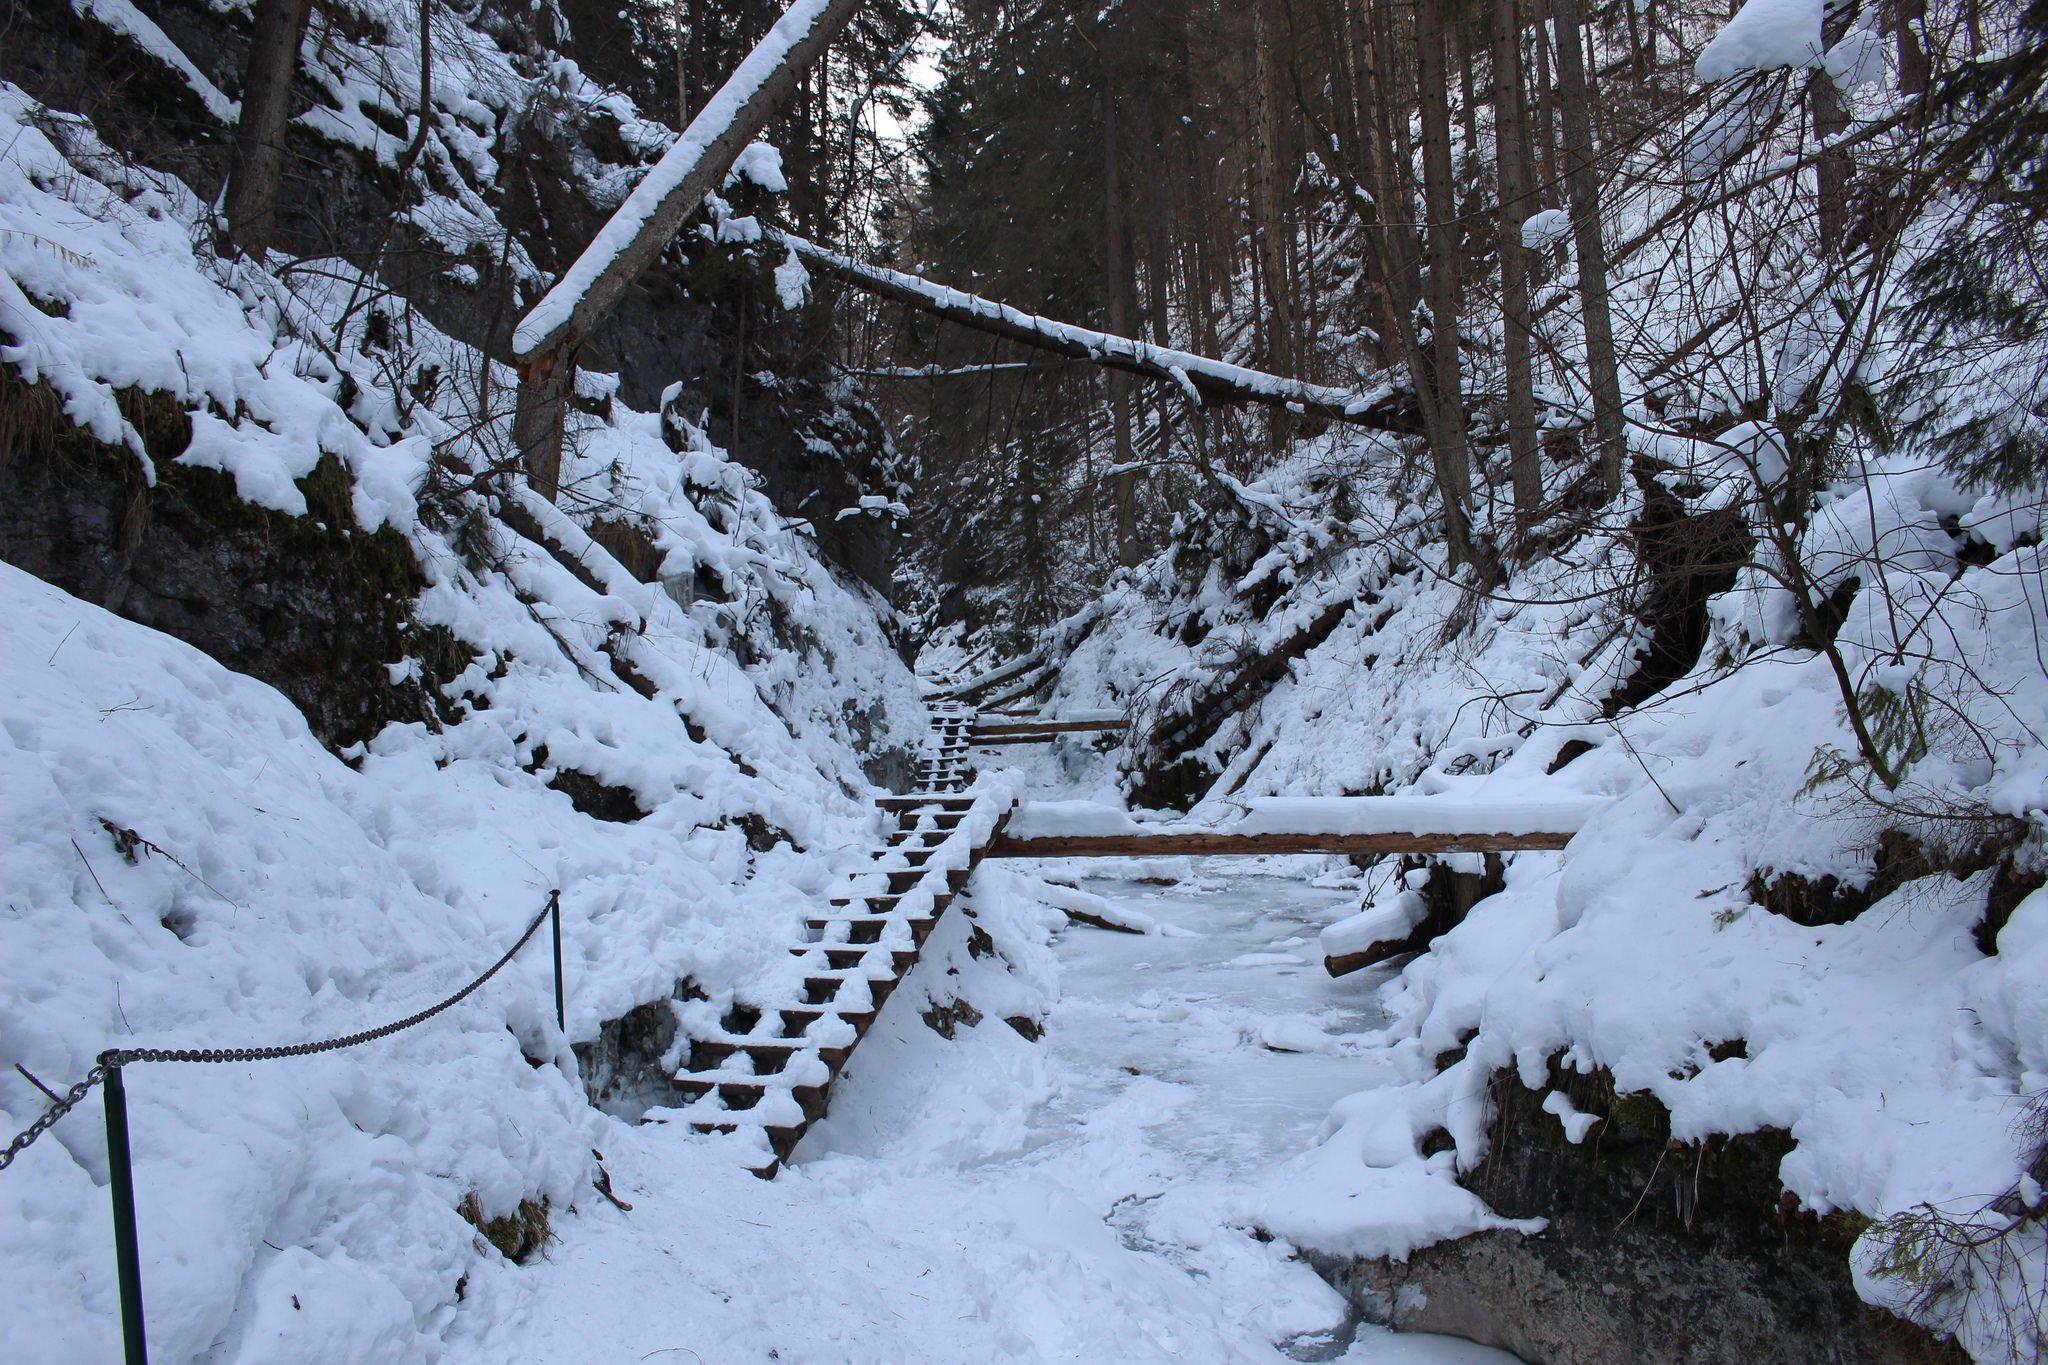 Suchá Belá gorge, winter hiking trip, Košice region, Slovakia – 3